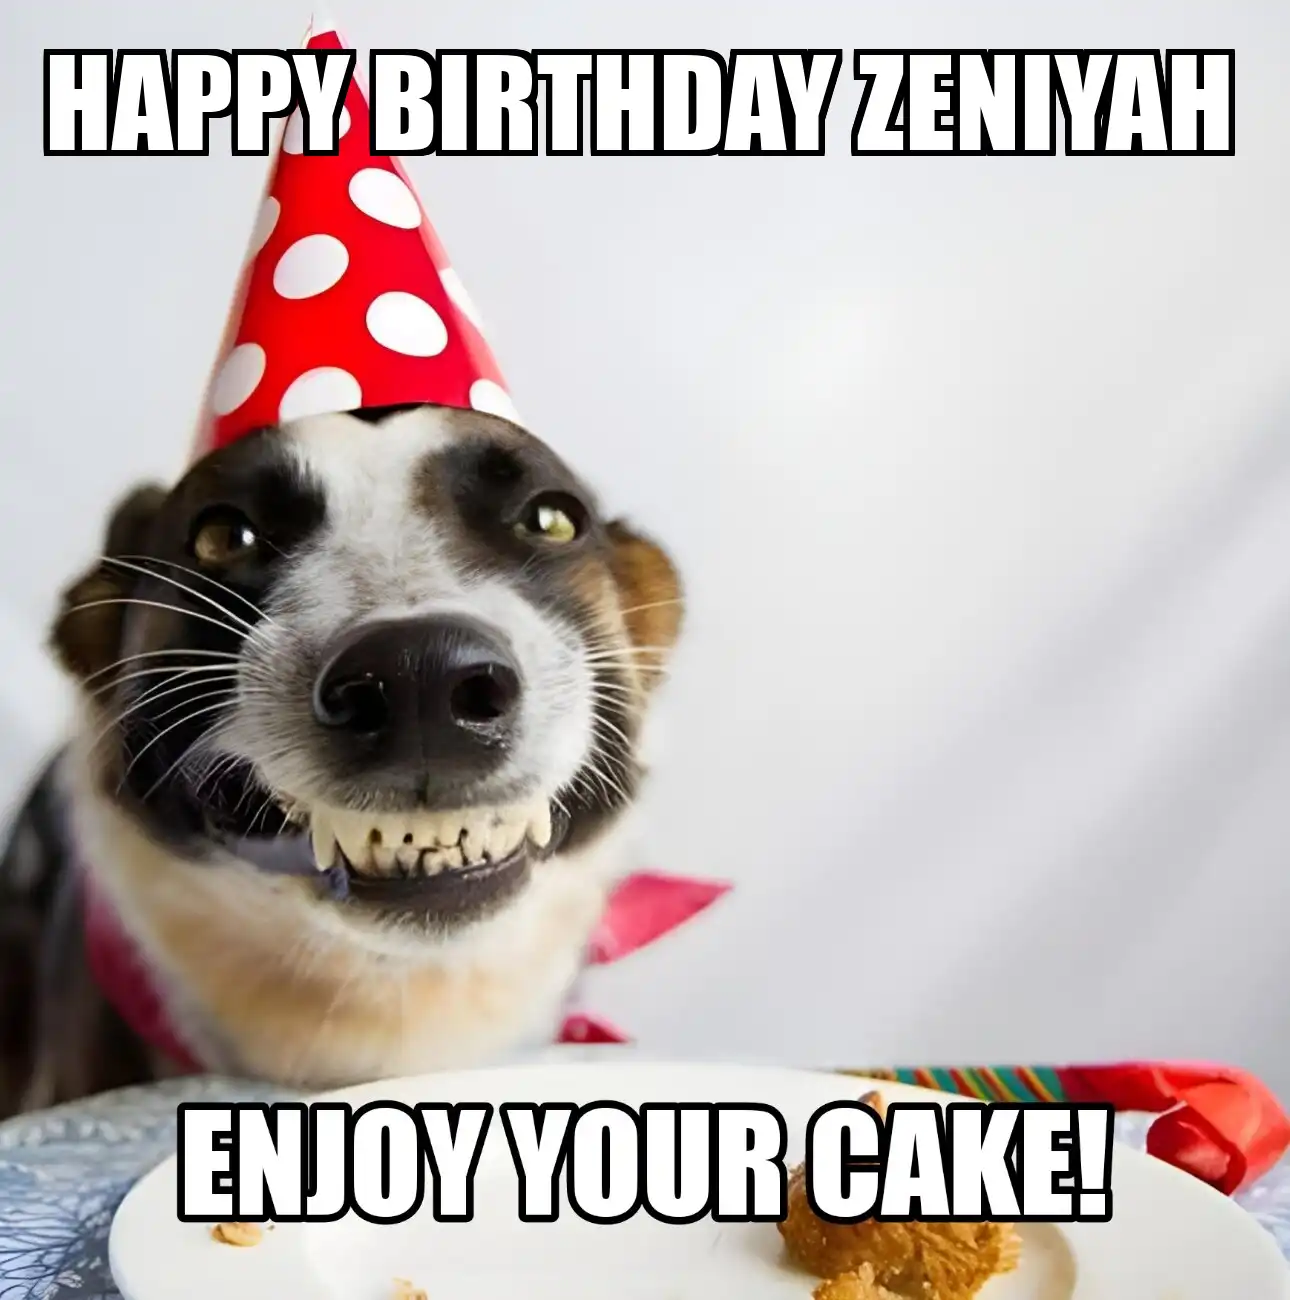 Happy Birthday Zeniyah Enjoy Your Cake Dog Meme